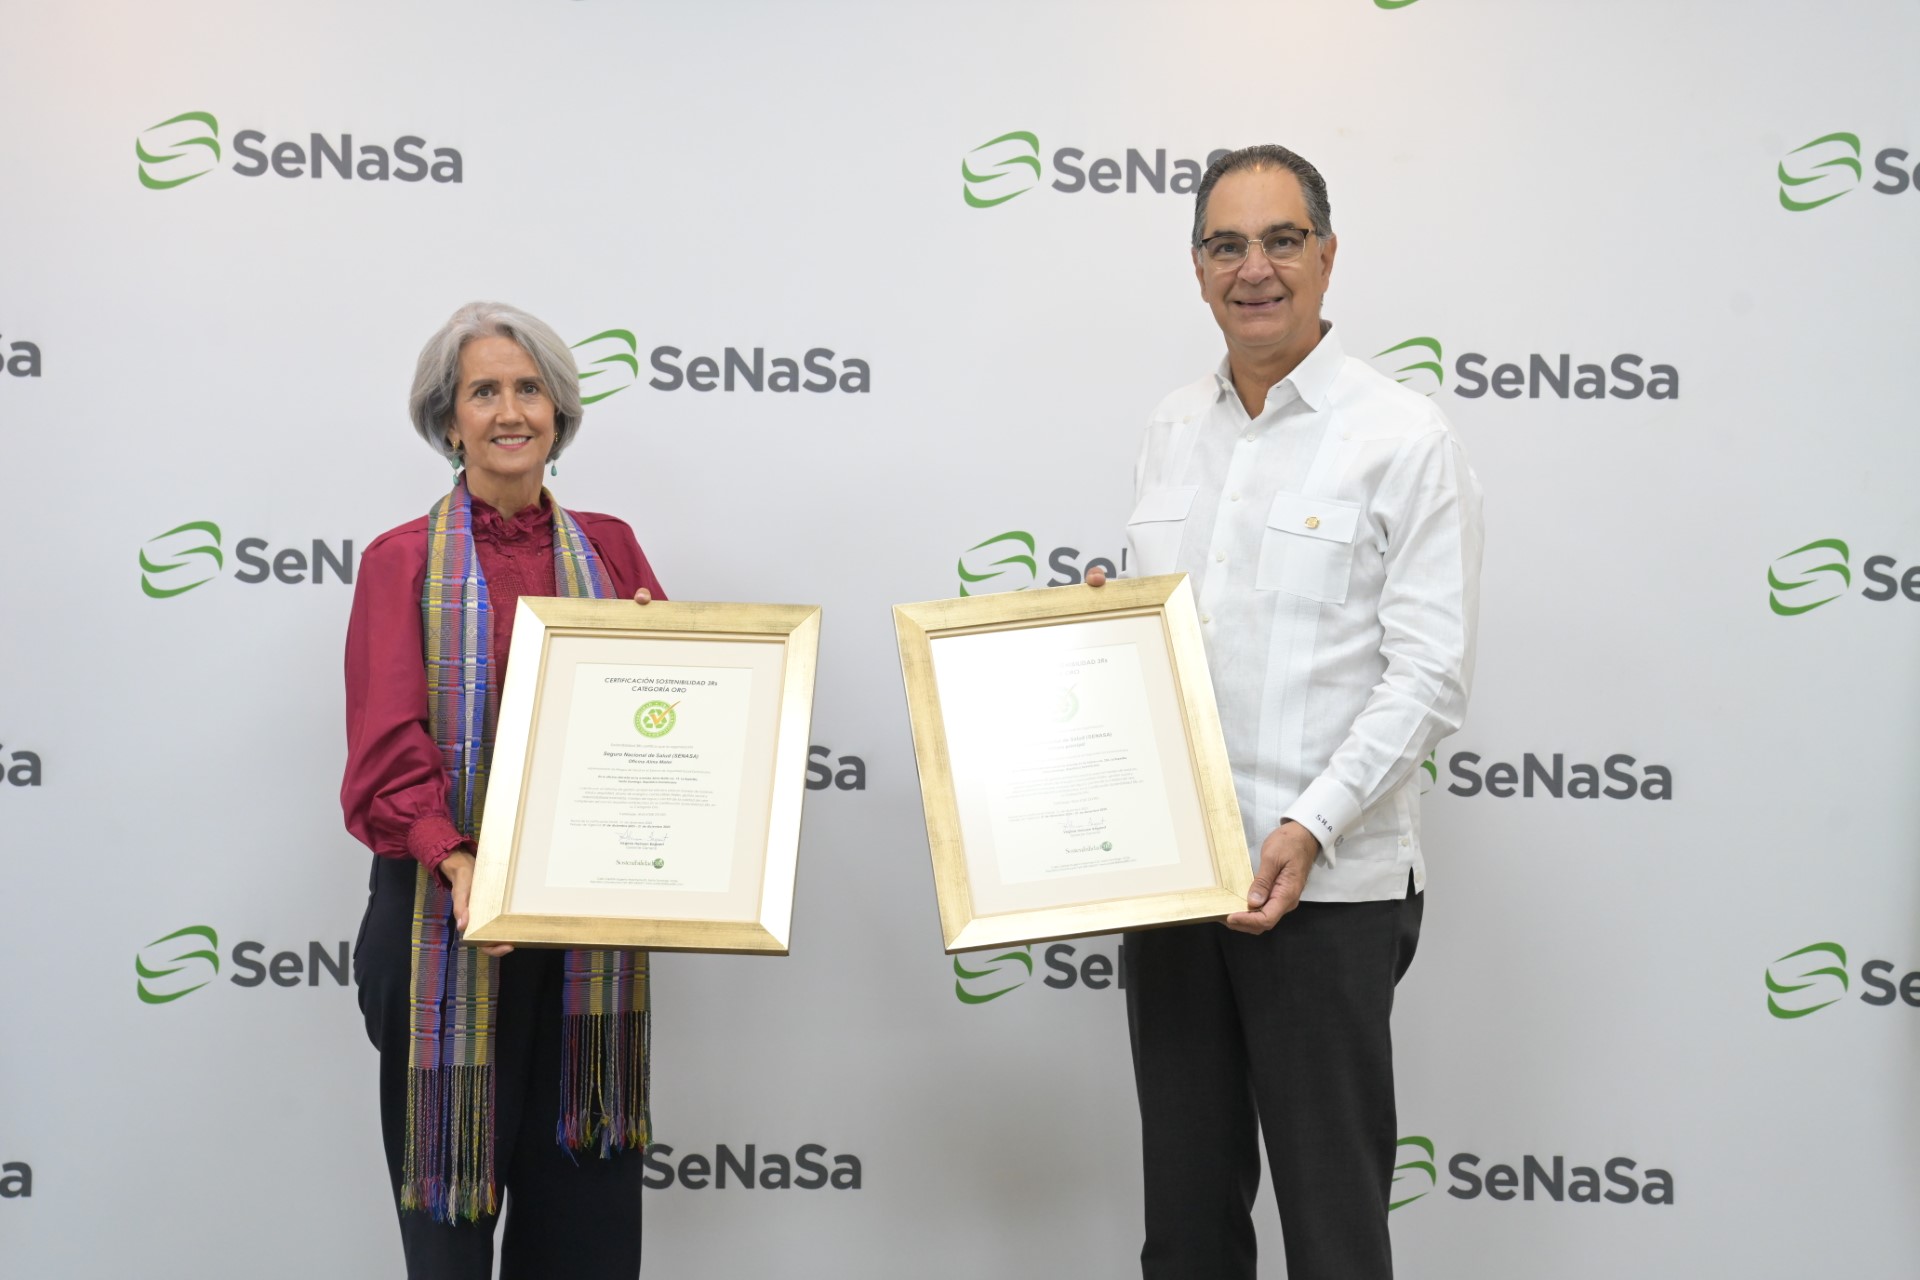 SeNaSa recibe oro en Sostenibilidad 3Rs